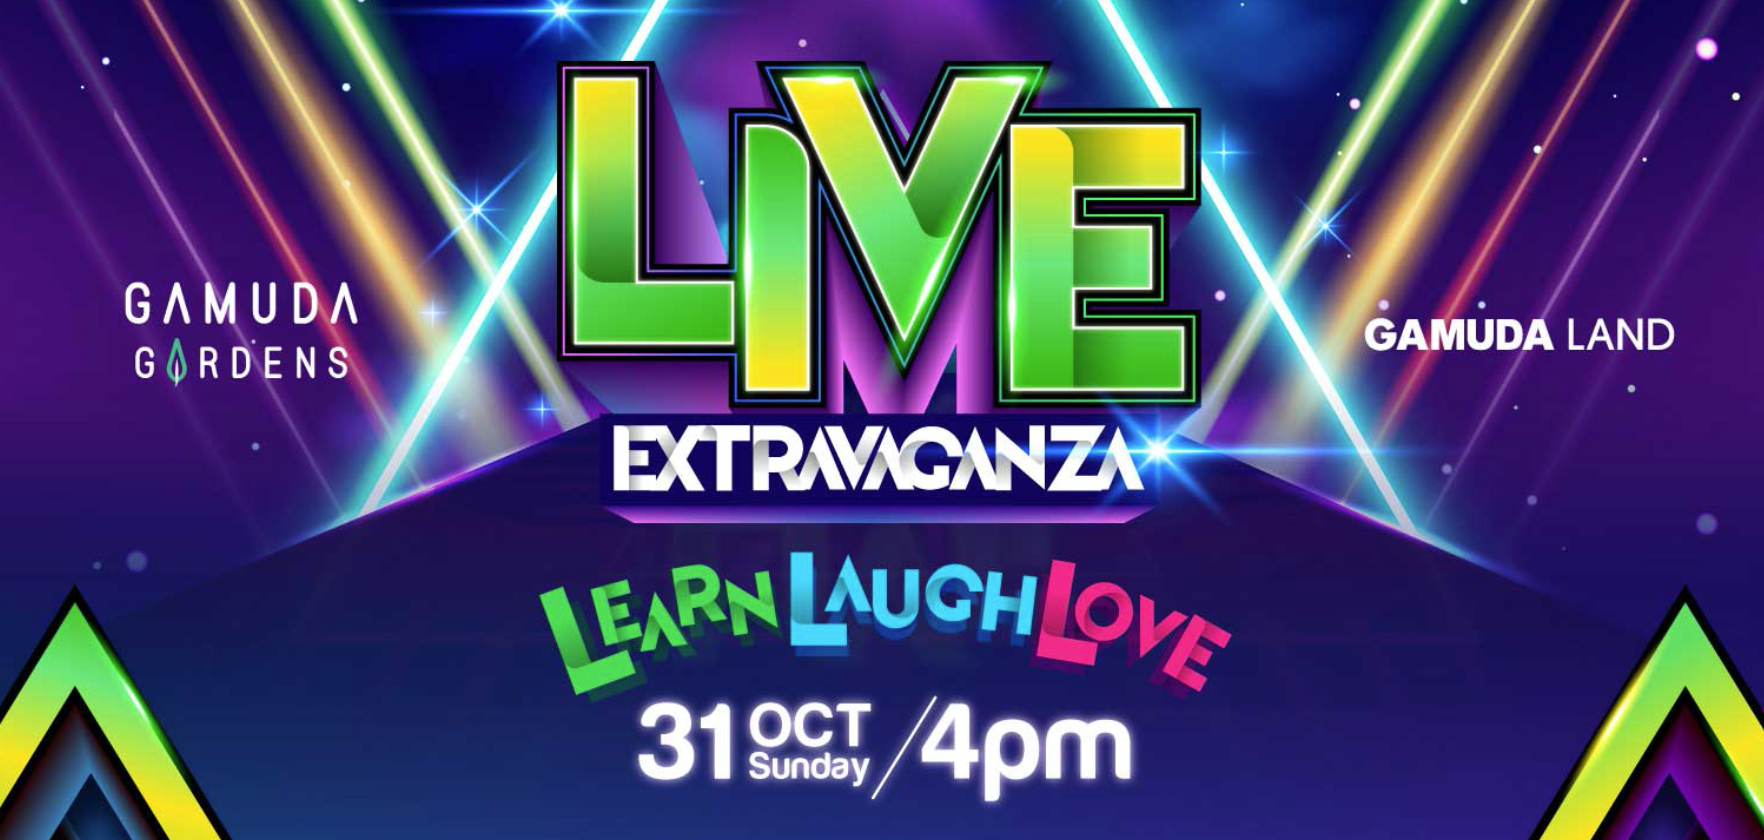 Gamuda Live Extravaganza